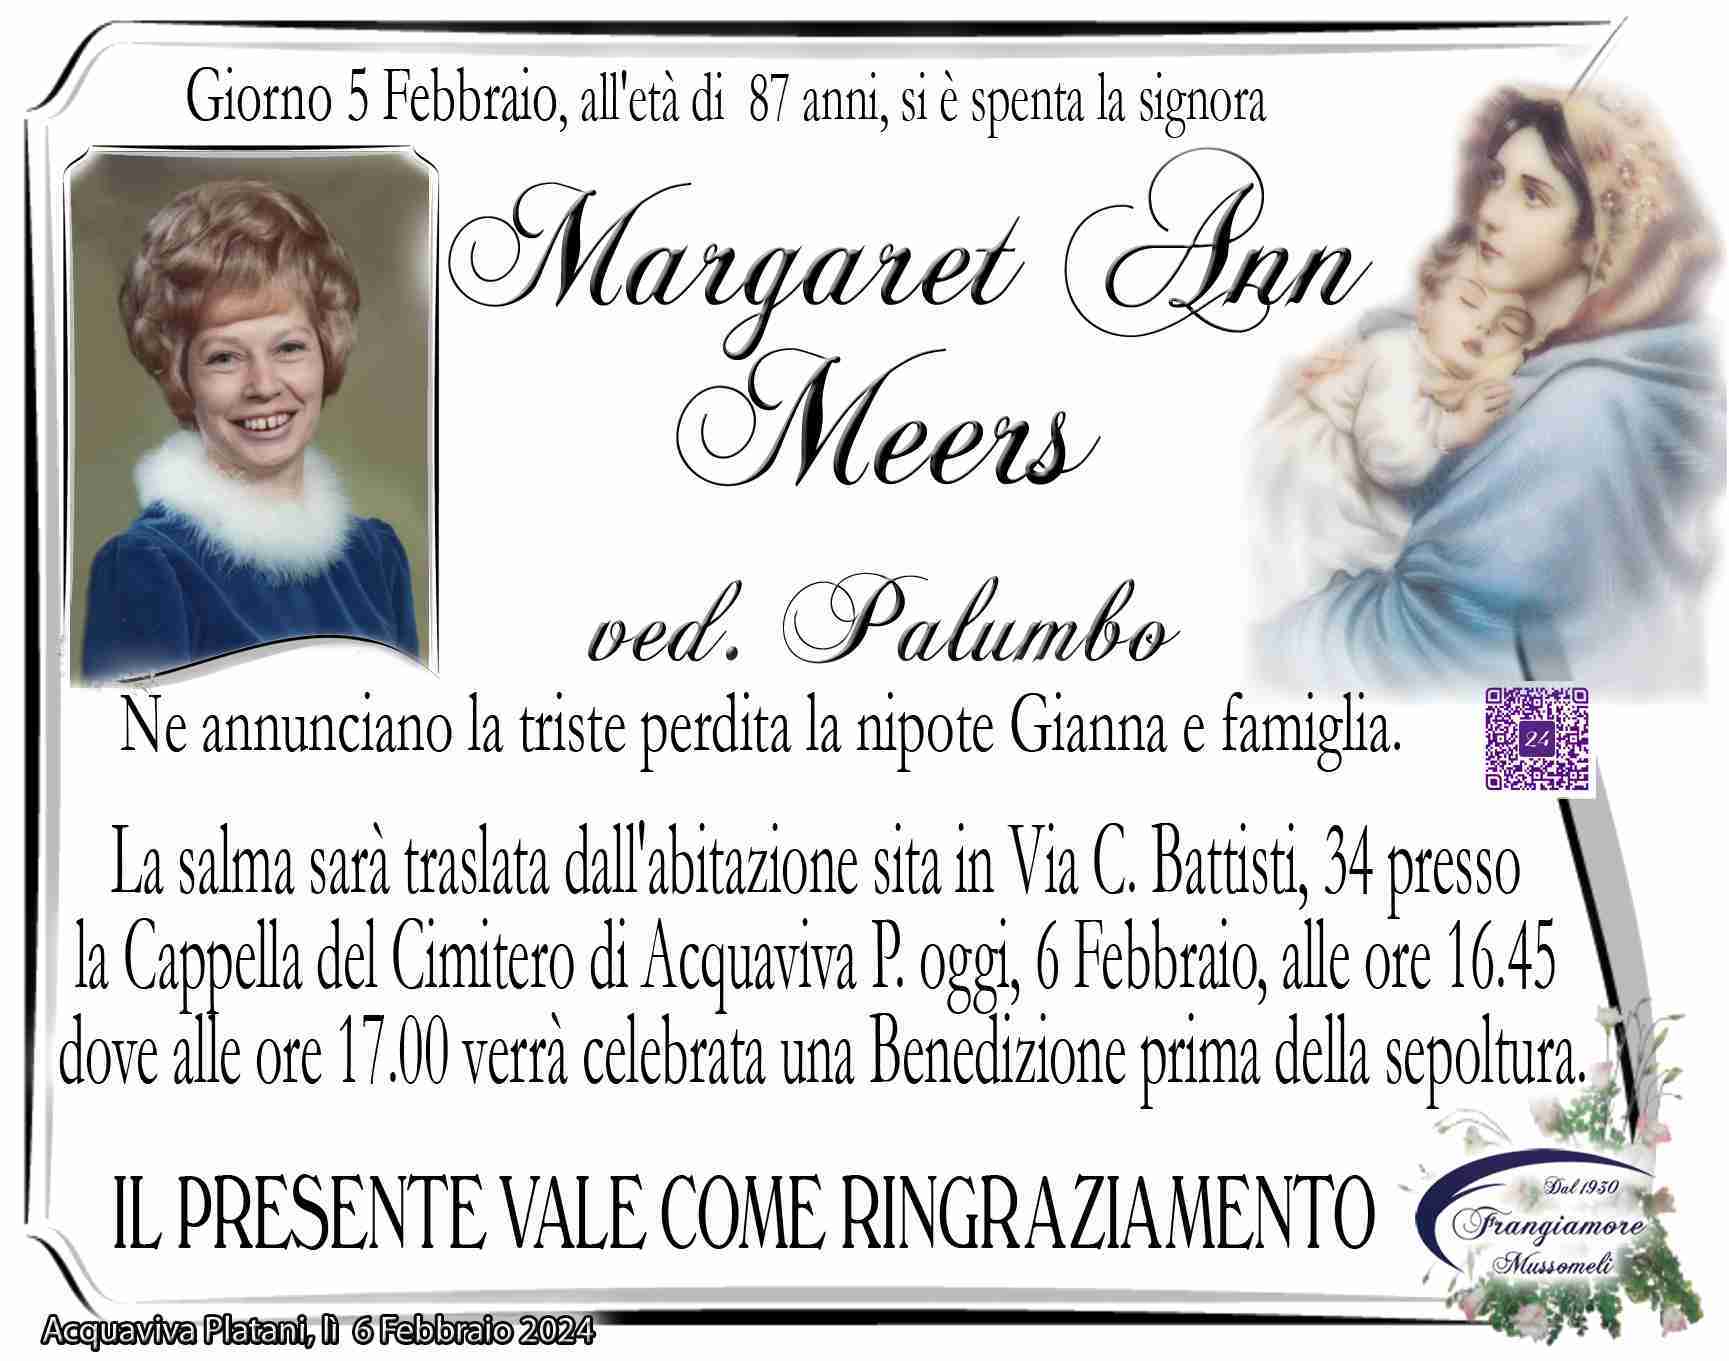 Margaret Ann Meers